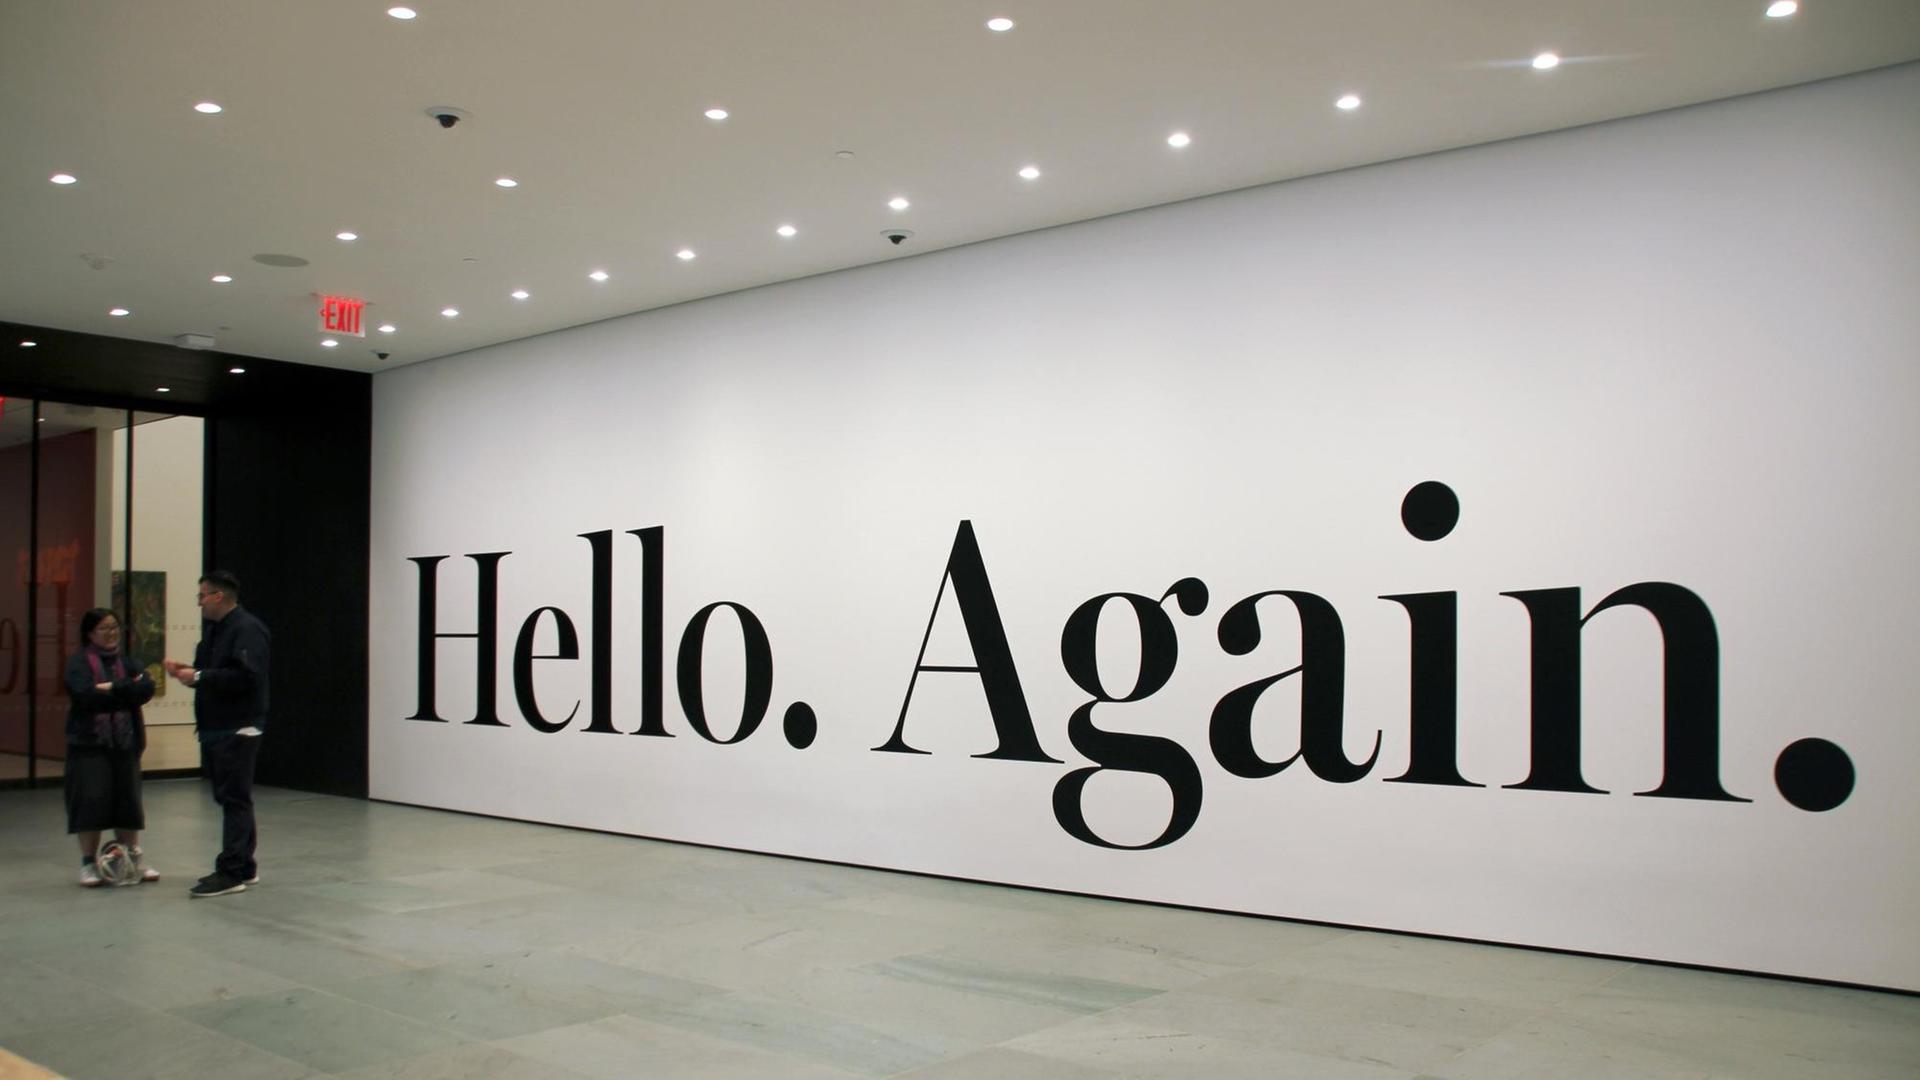 Am Eingang vom Museum der modernen Kunst in New York kann man "Hello. Again." lesen - das bedeutet etwa: Wir sagen wieder "Hallo".